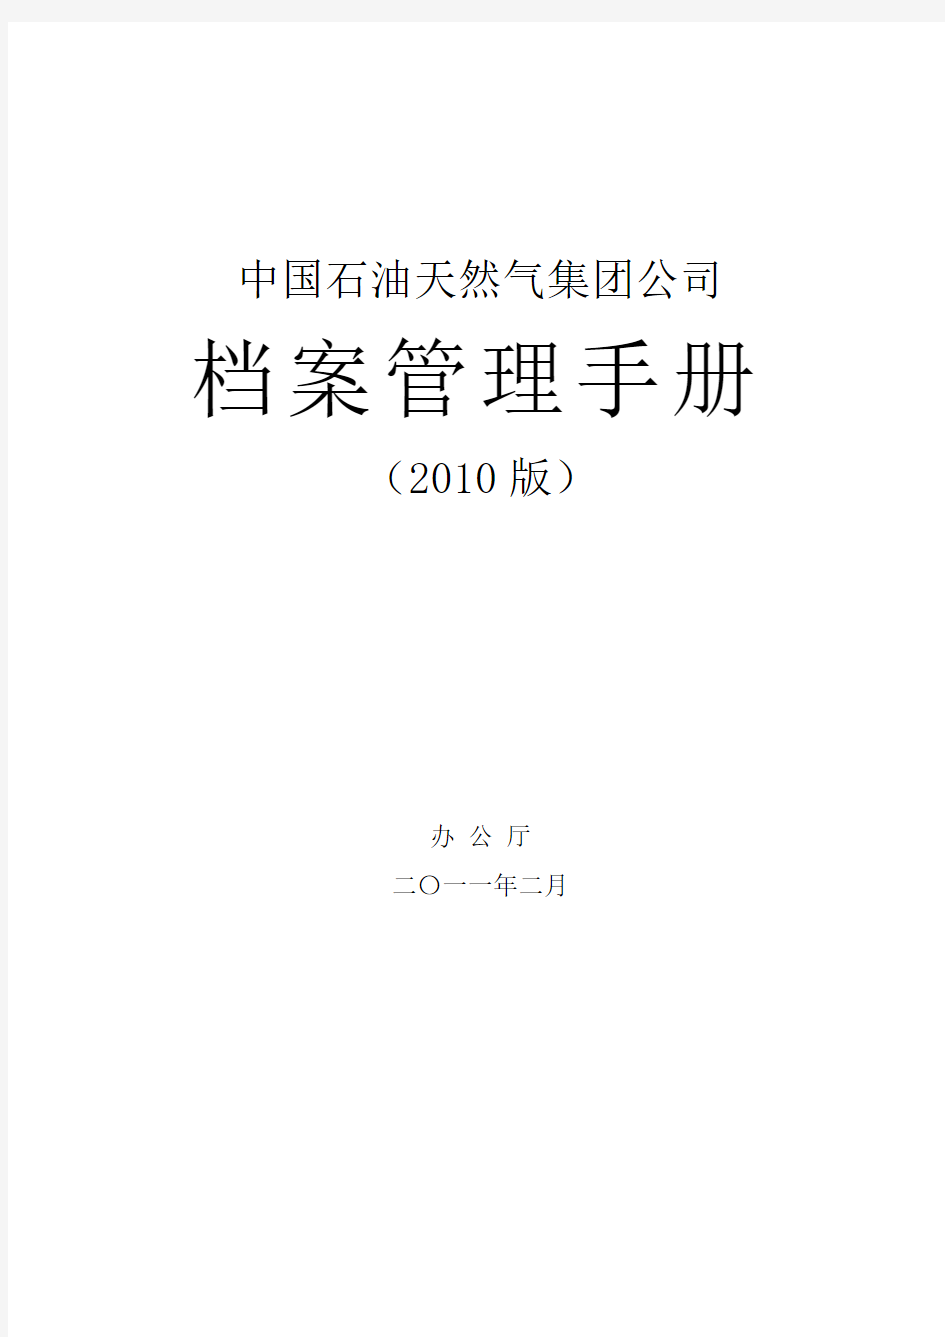 厅发 中国石油天然气集团公司档案管理手册 版 